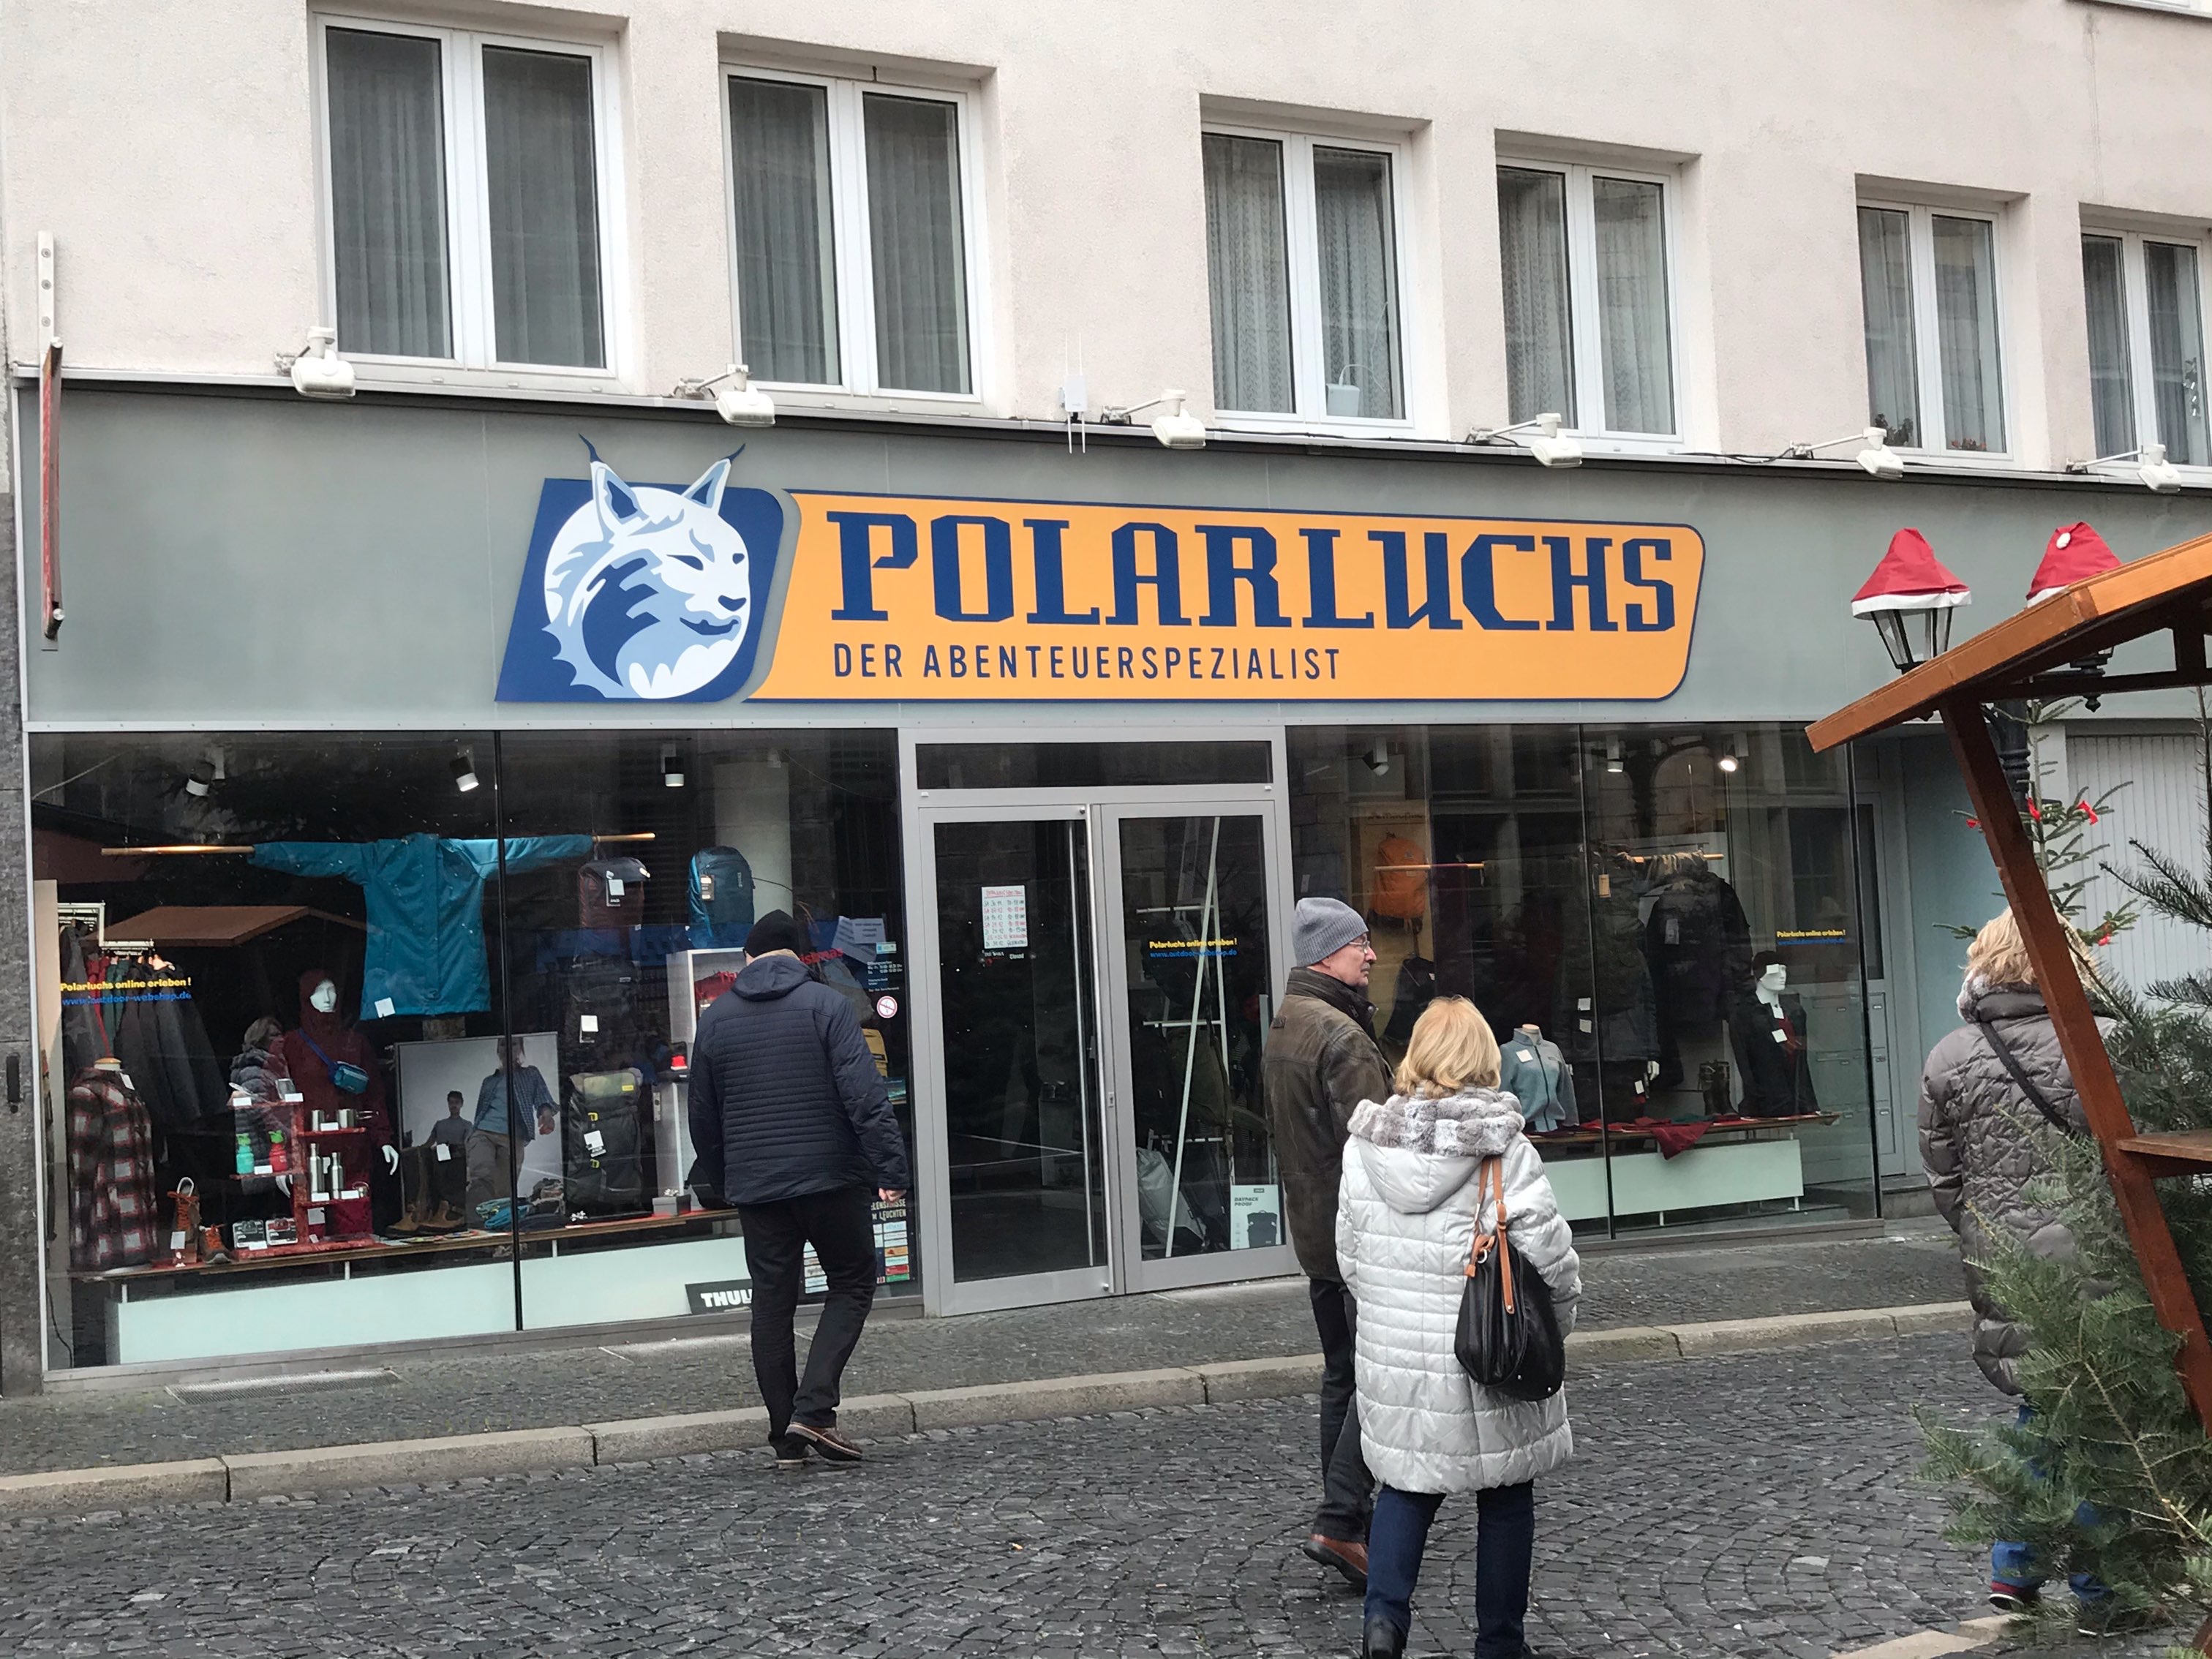 Bild 1 Polarluchs GmbH in Hildesheim